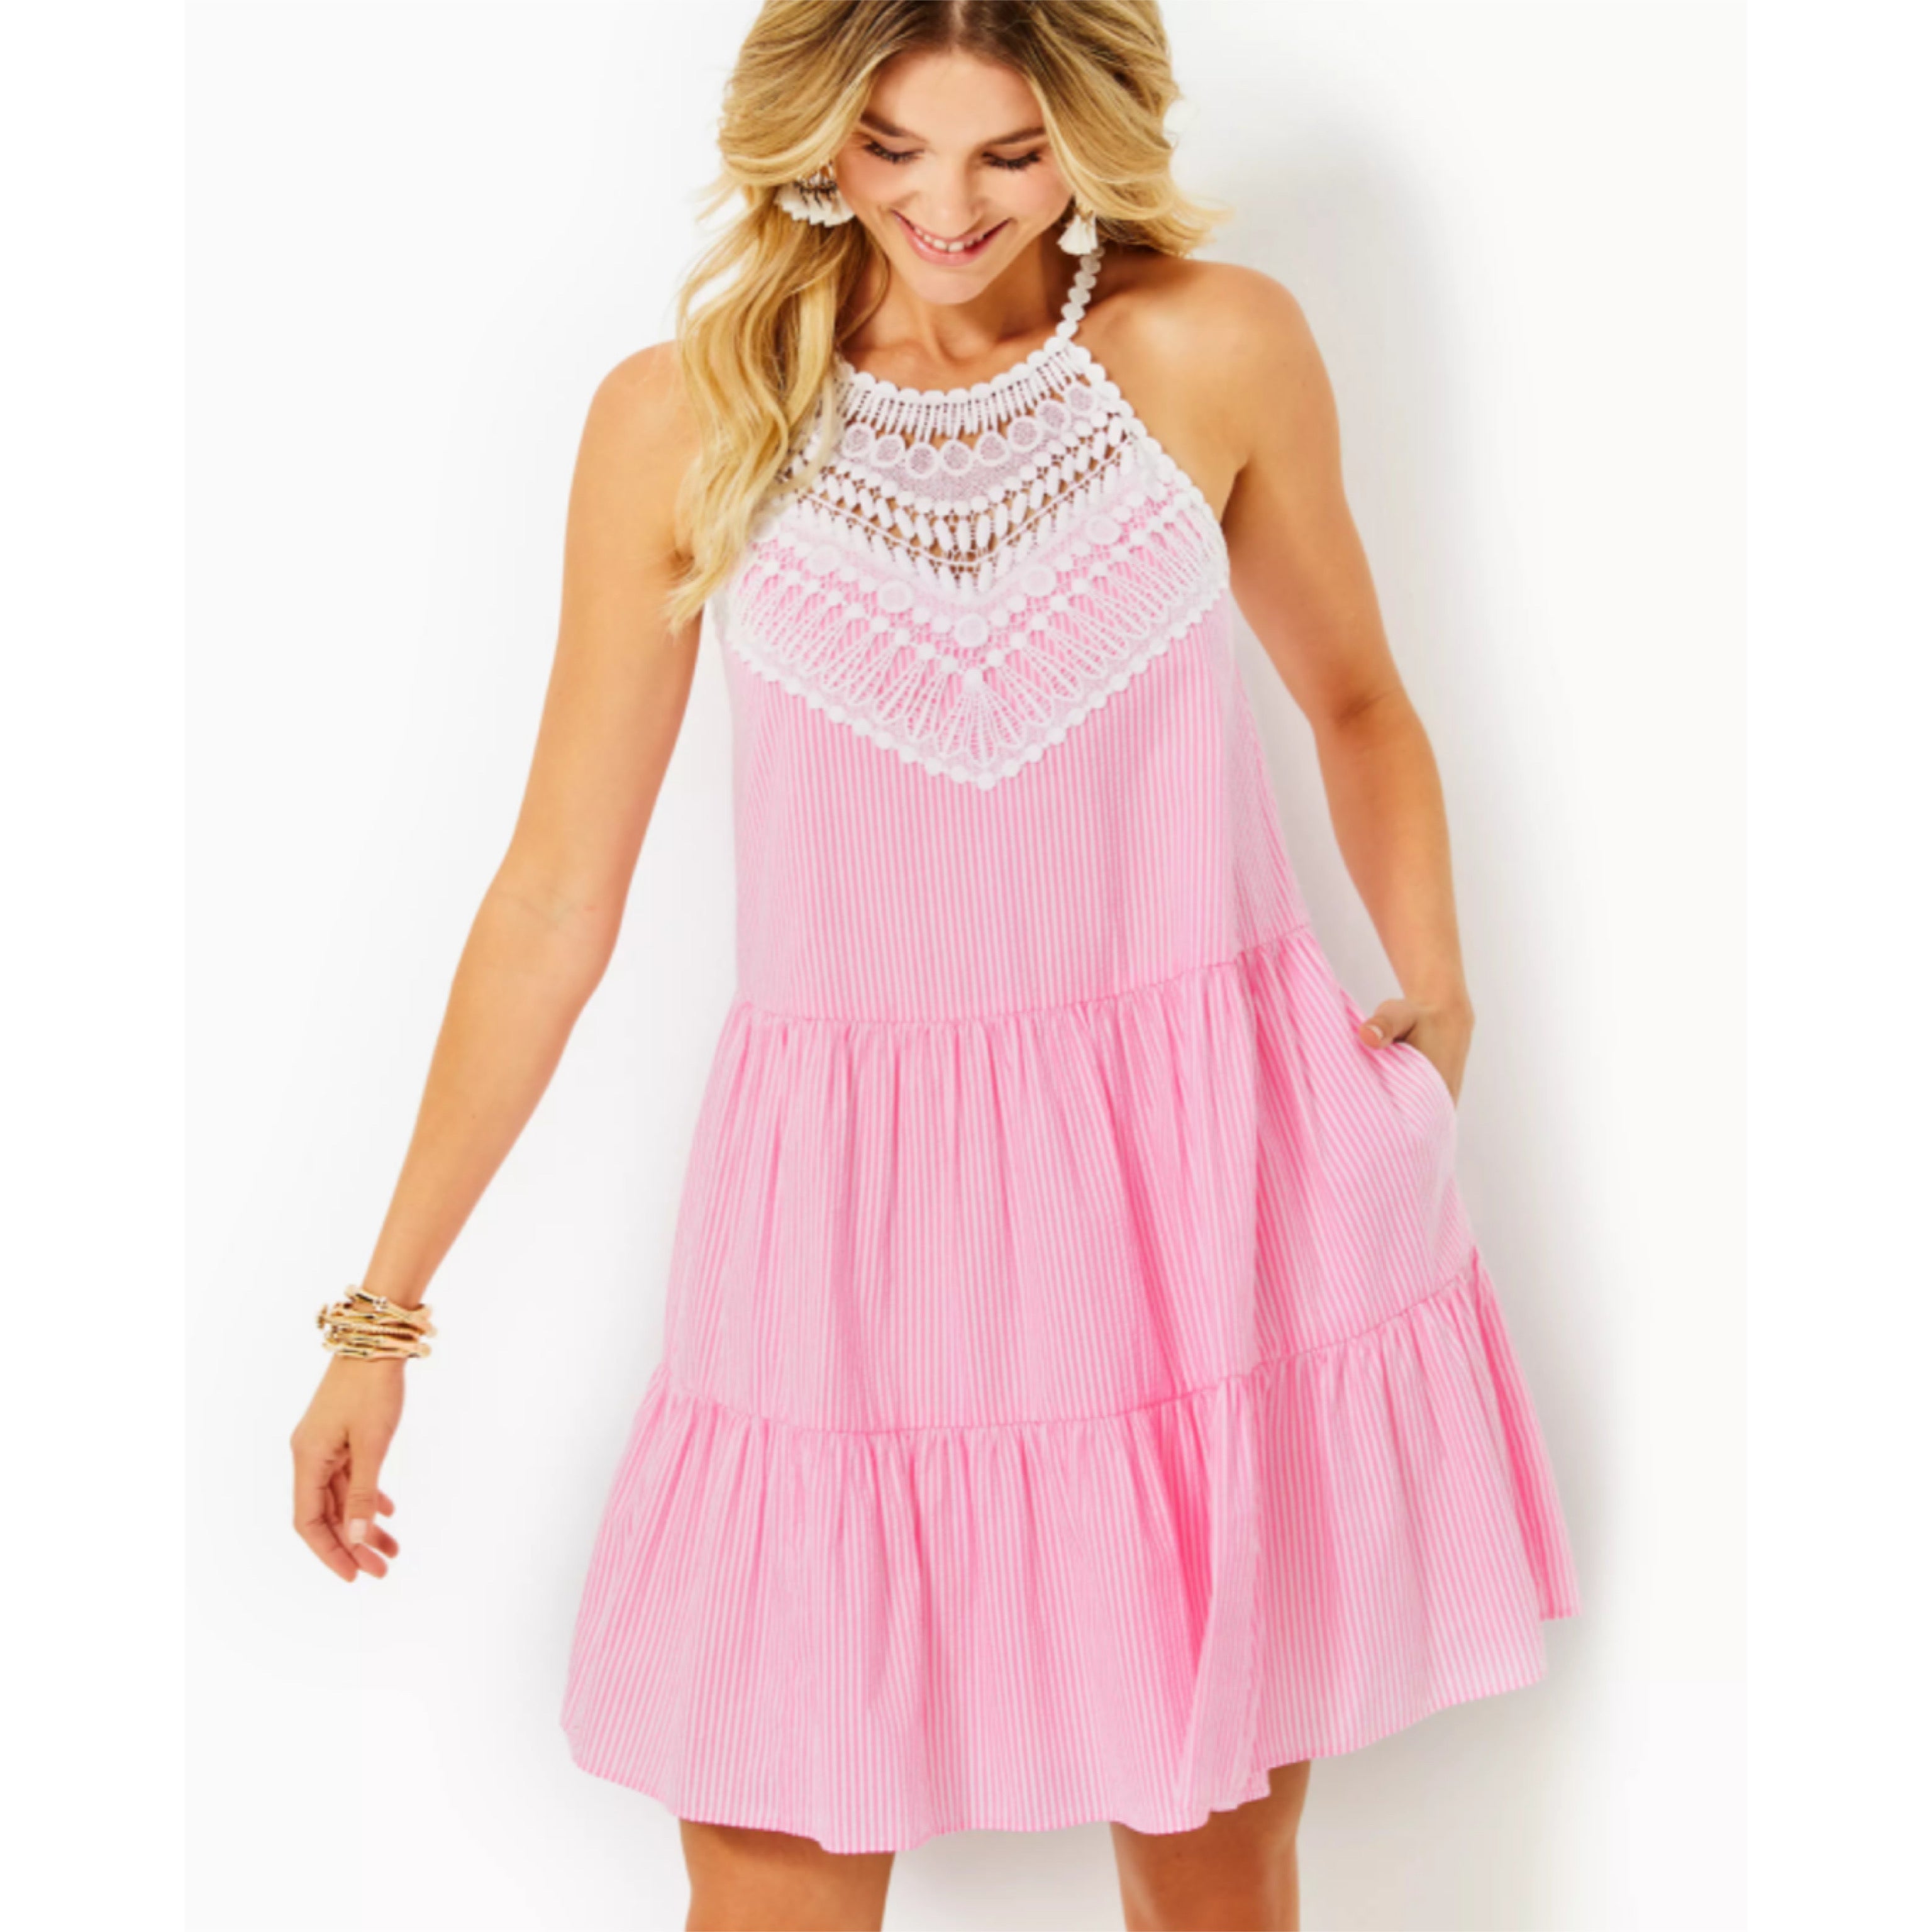 Lilly Pulitzer pink seersucker Britt dress, size 4